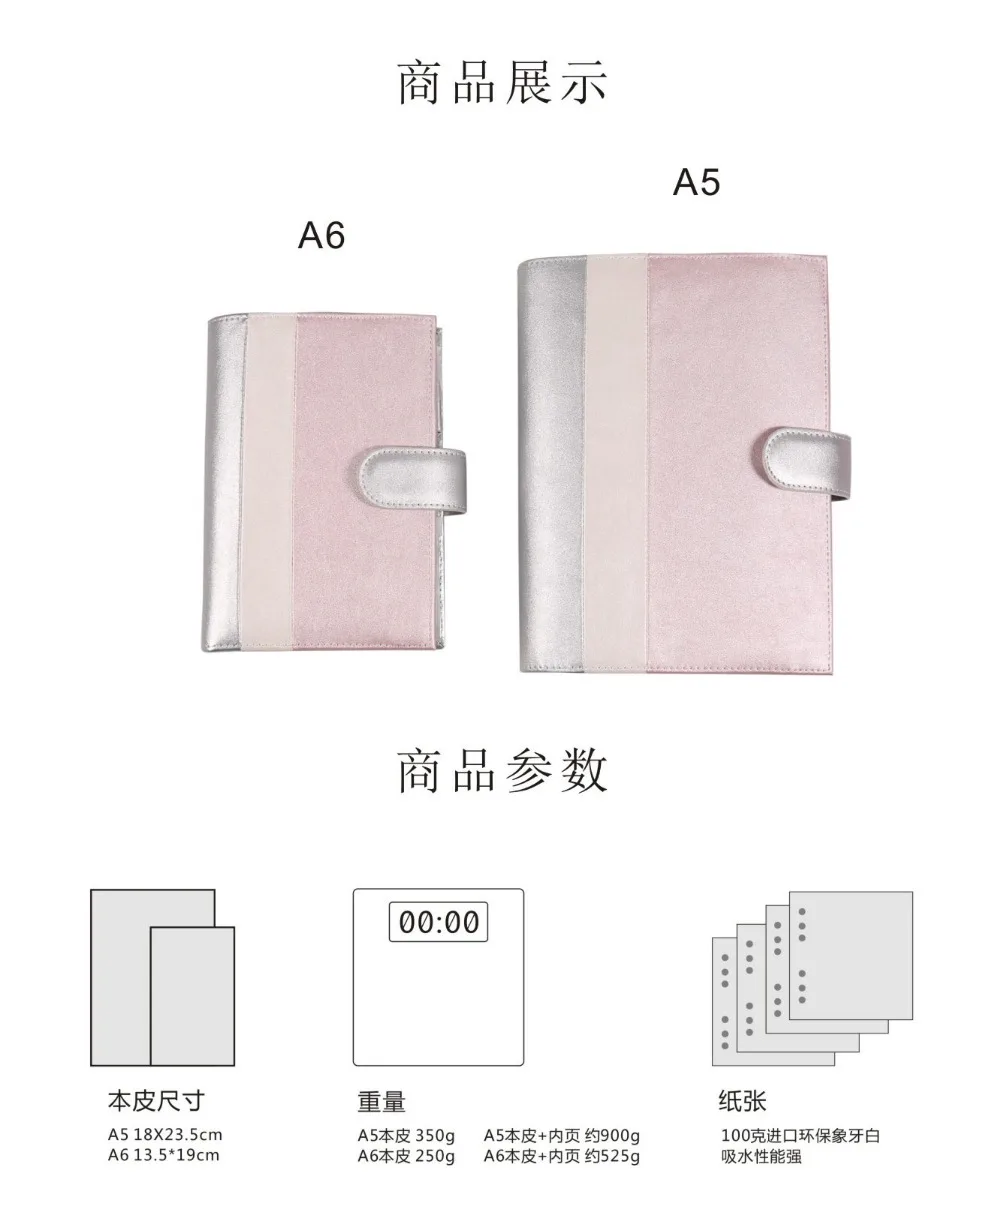 Yiwi A5 A6 PU планировщик кожа перстень в деловом стиле для офиса записная книжка, милые, миленькие в японском стиле(«Каваий»), планировщик мероприятий для дневника